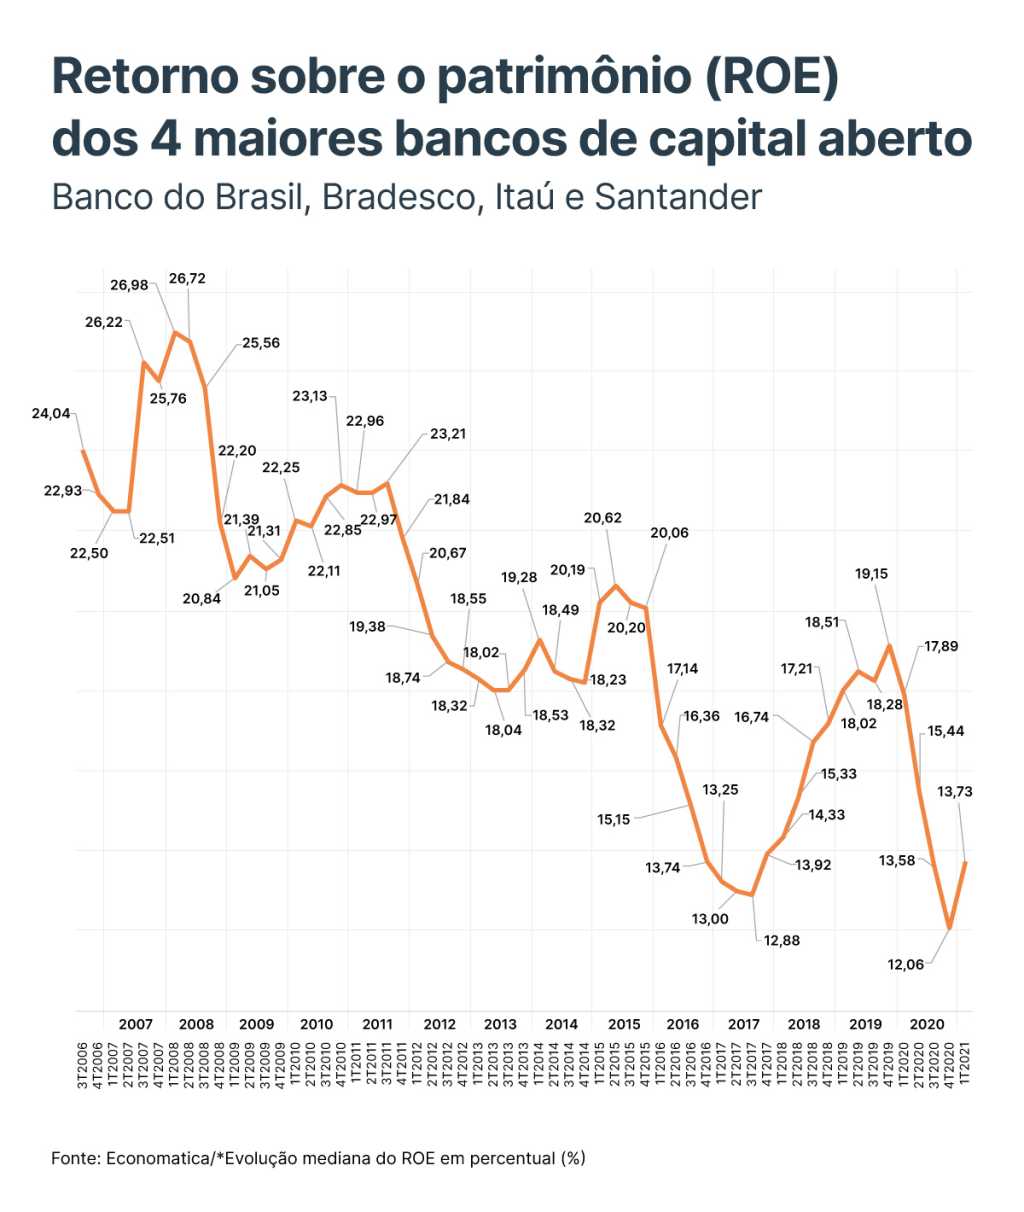 Segmento Bancário - ABC Brasil, Banco do Brasil, Bradesco, Santander e Itaú  : r/Fundamentus